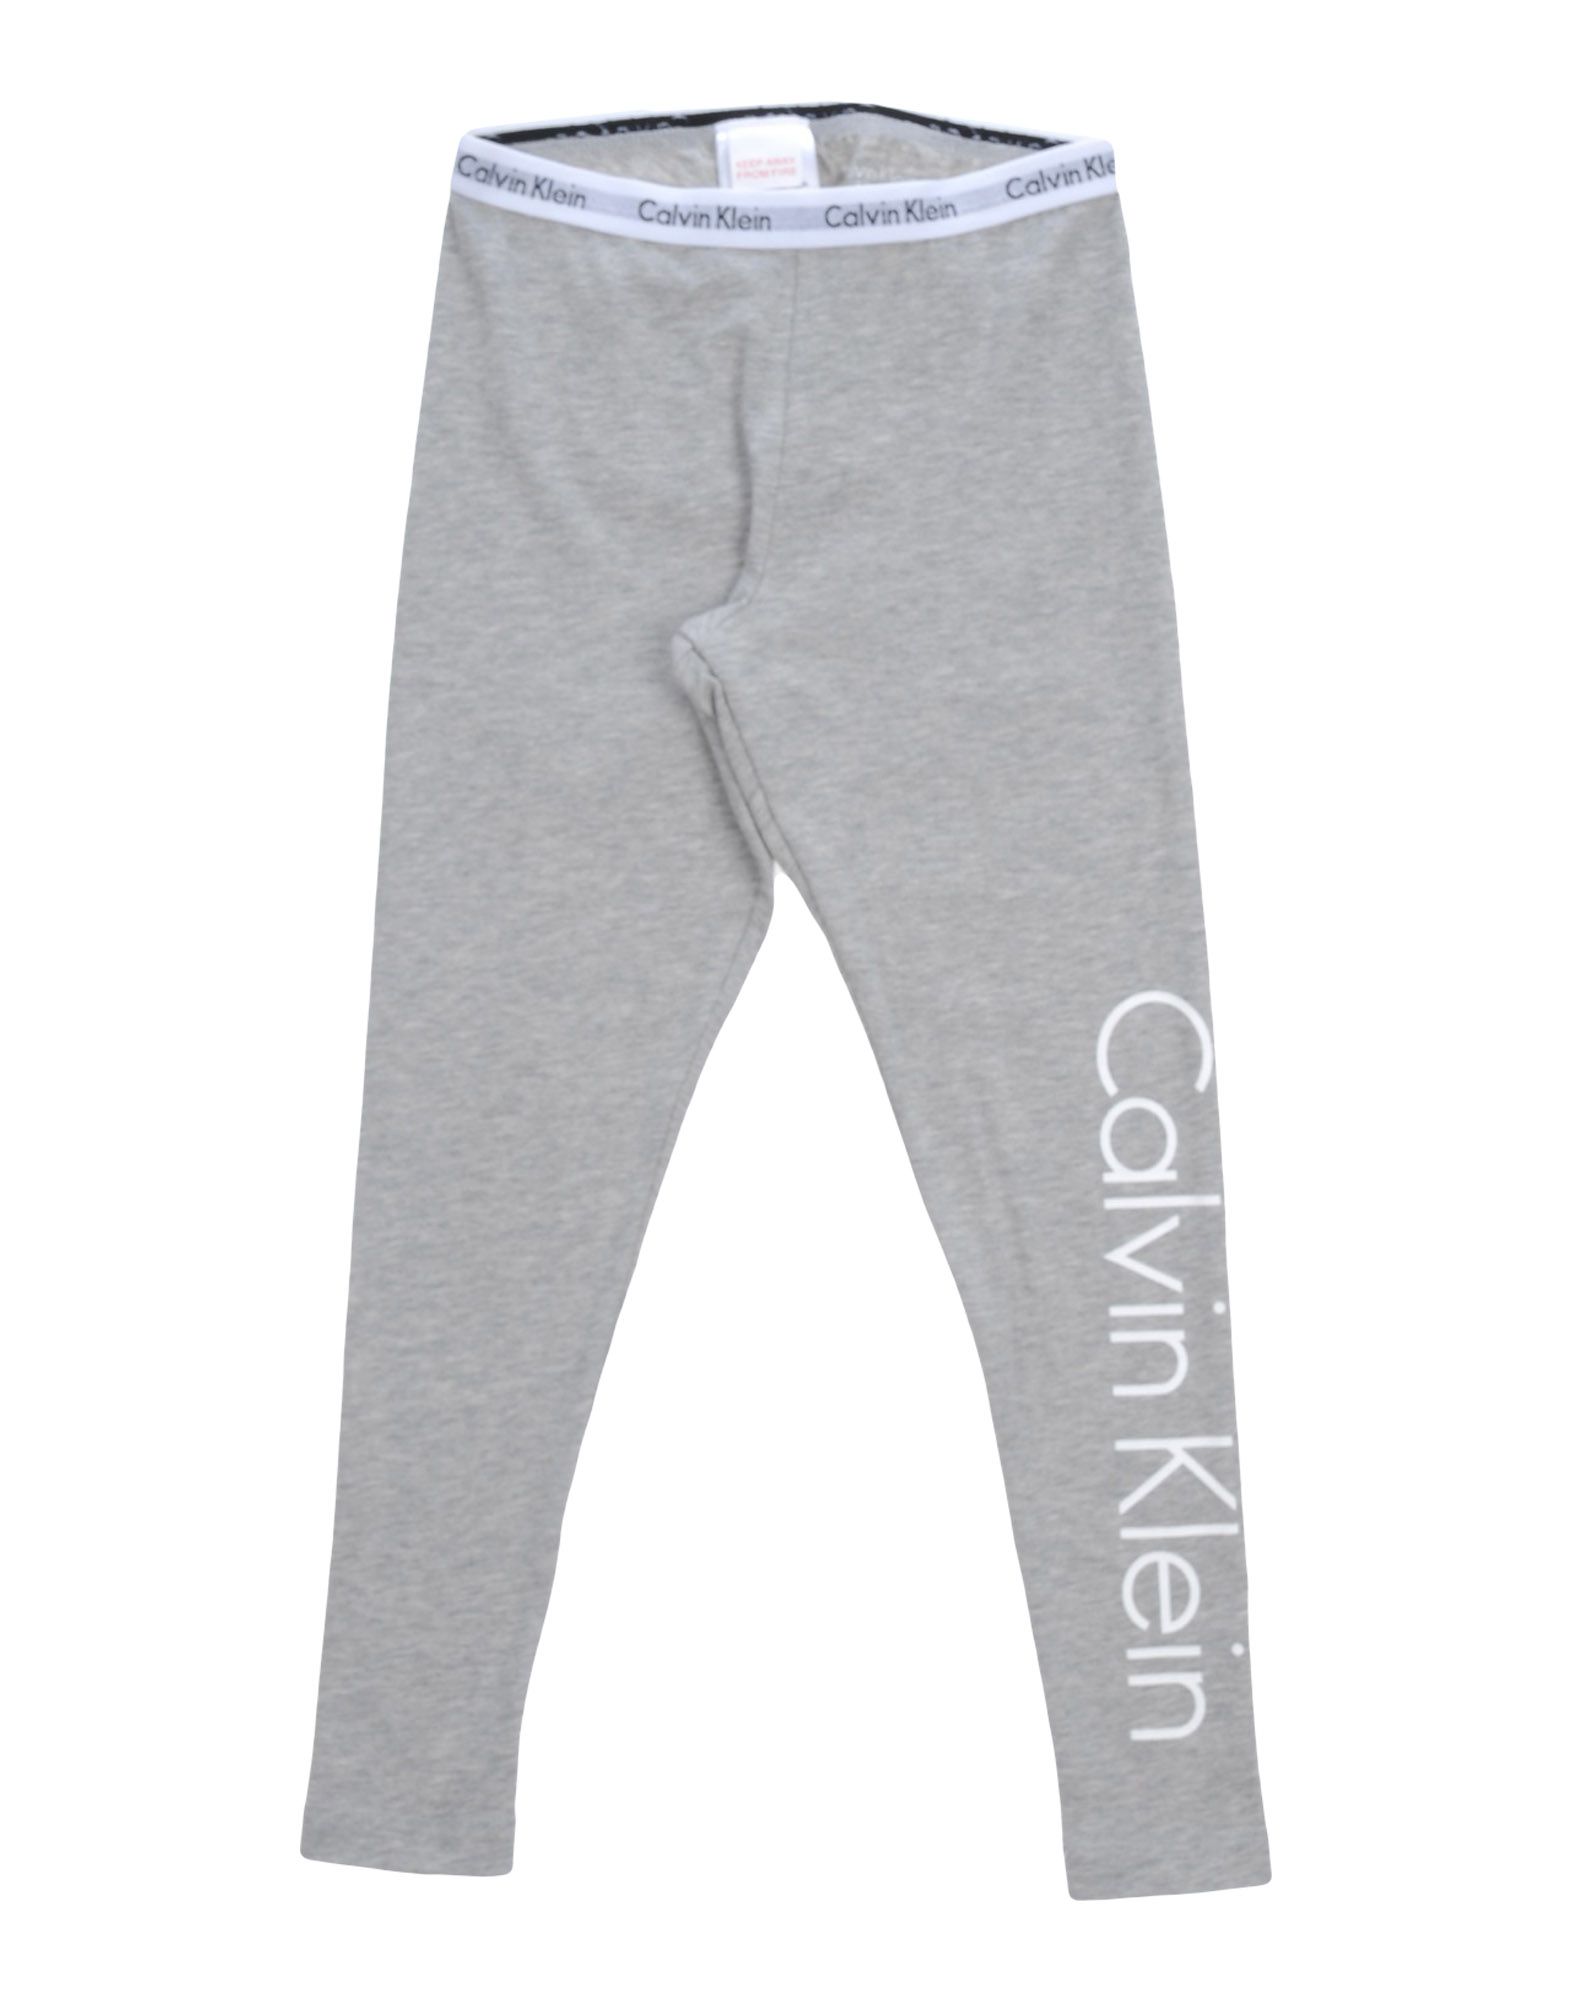 calvin klein sleepwear leggings